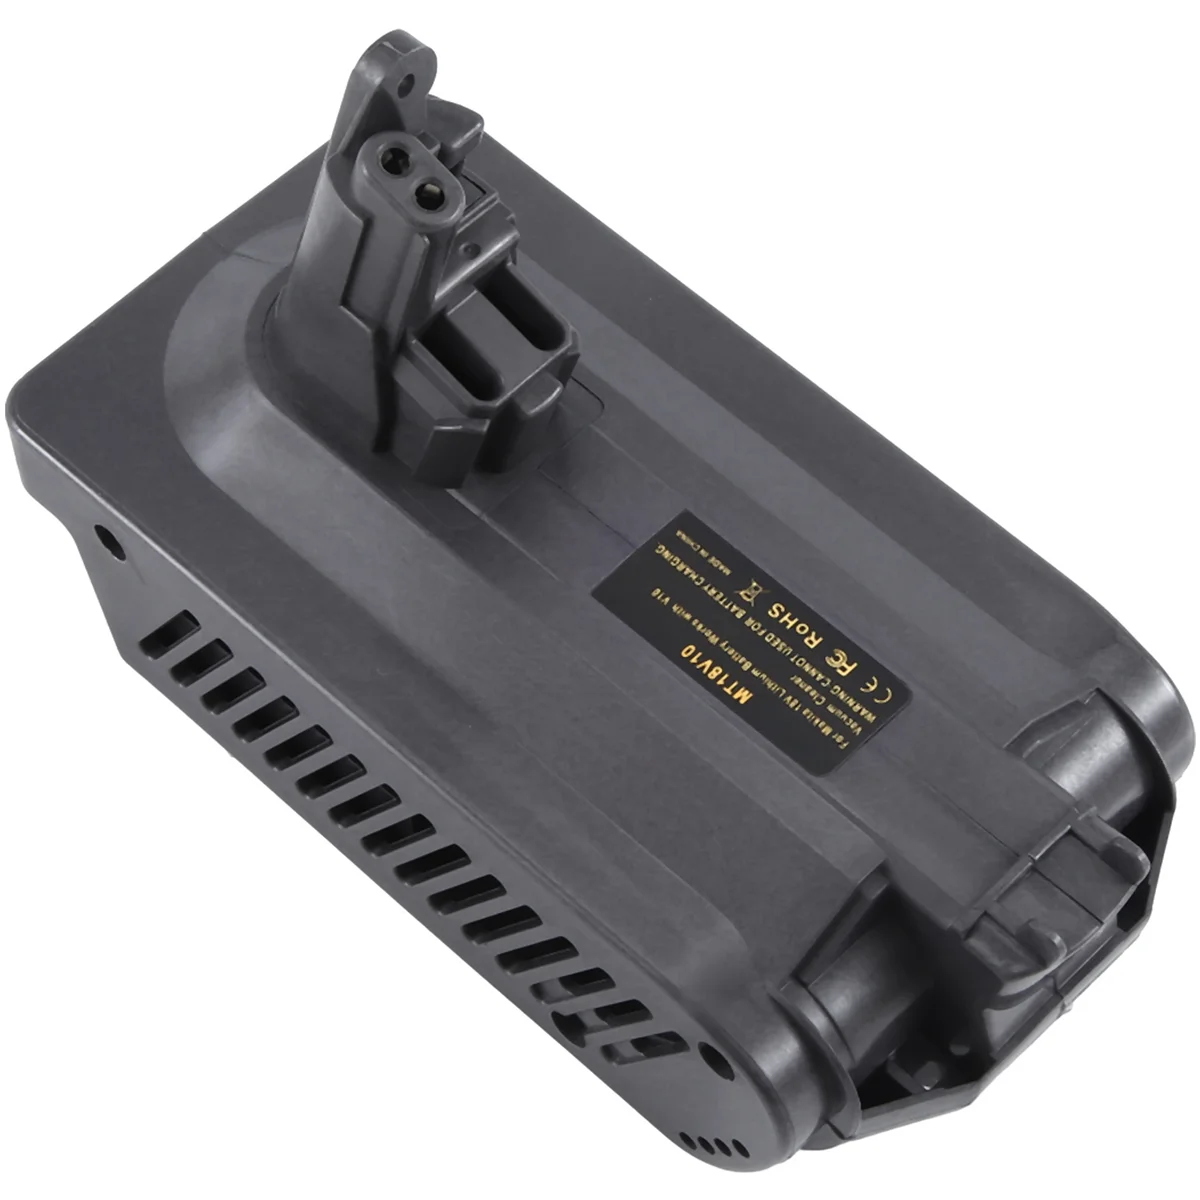 Battery Adapter for Makita 18V Li-Ion Battery Convert to for Dyson V10 Vacuum Cleaner MT18V10